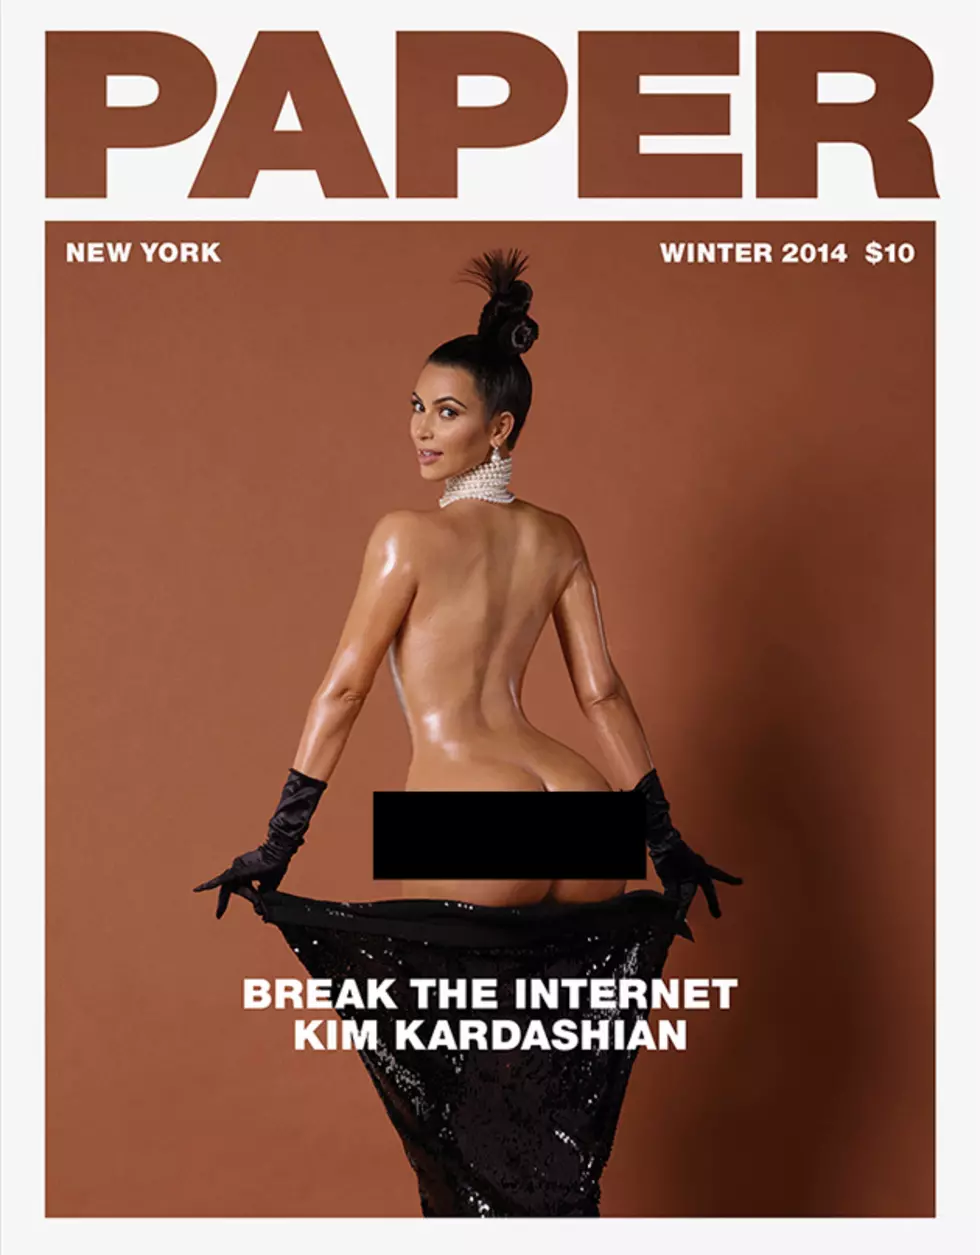 Kim Kardashian’s Butt Cover! DANG